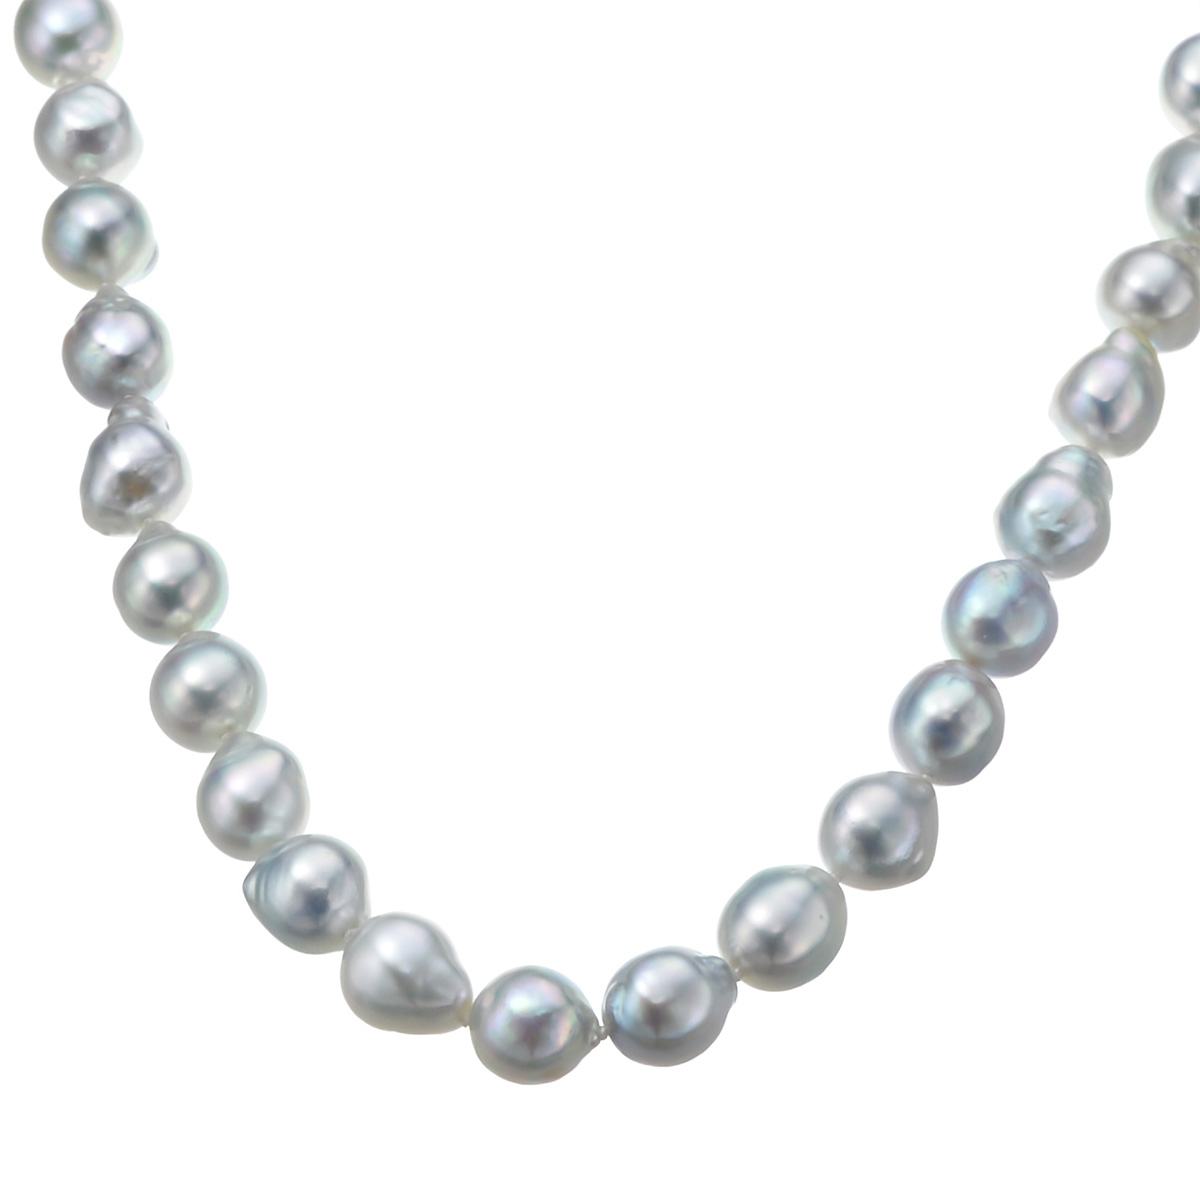 アコヤ真珠ナチュラルカラー 8mm珠 オールノット ロングネックレス 